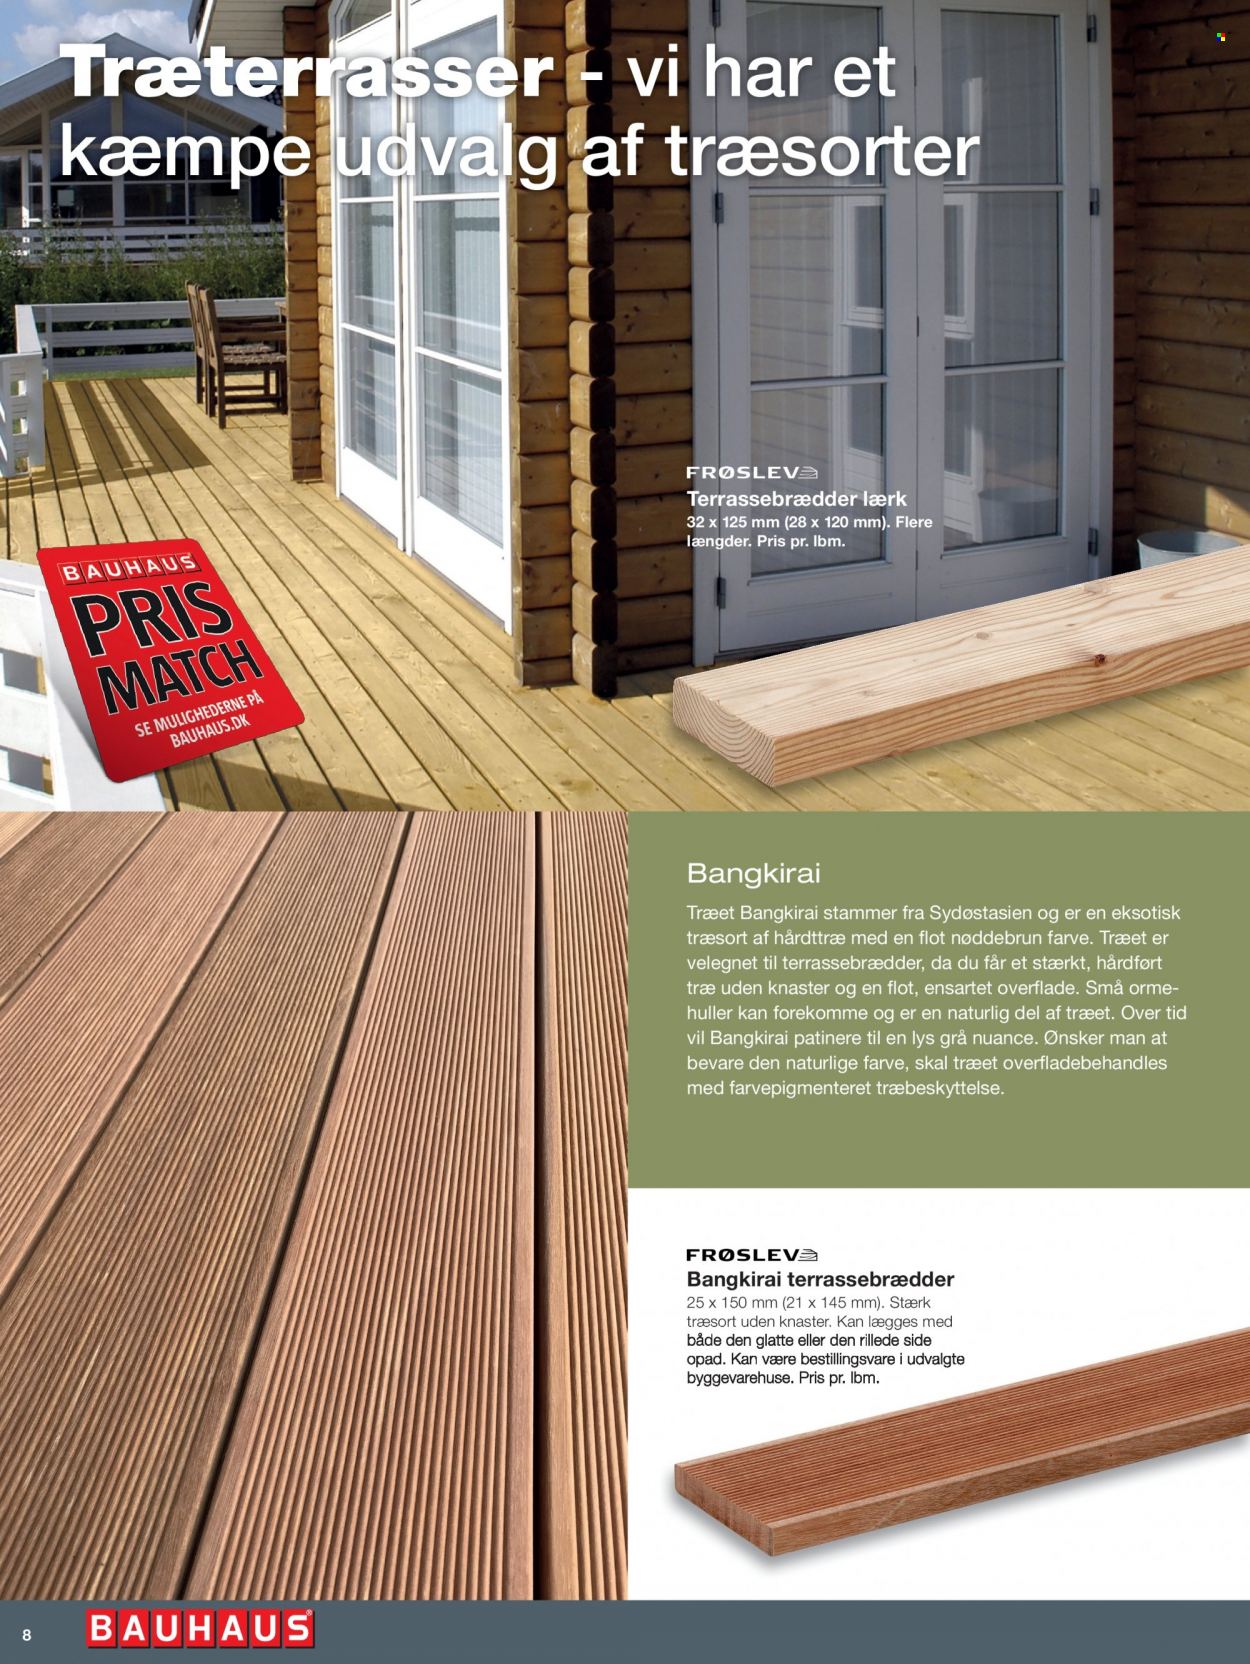 Bauhaus tilbud  - tilbudsprodukter - træbeskyttelse, terrassebrædder. Side 8.